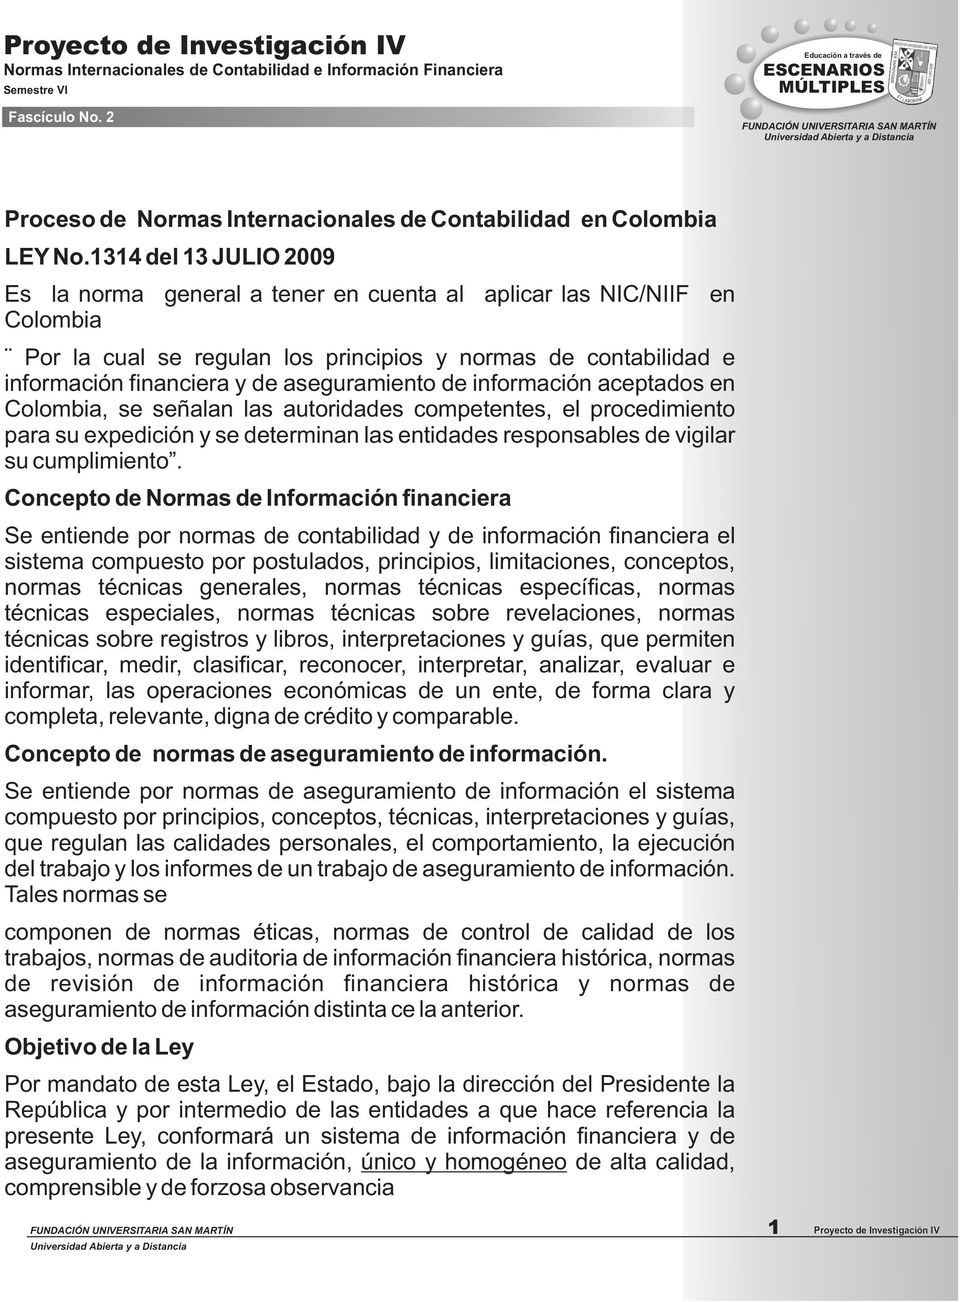 aseguramiento de información aceptados en Colombia, se señalan las autoridades competentes, el procedimiento para su expedición y se determinan las entidades responsables de vigilar su cumplimiento.